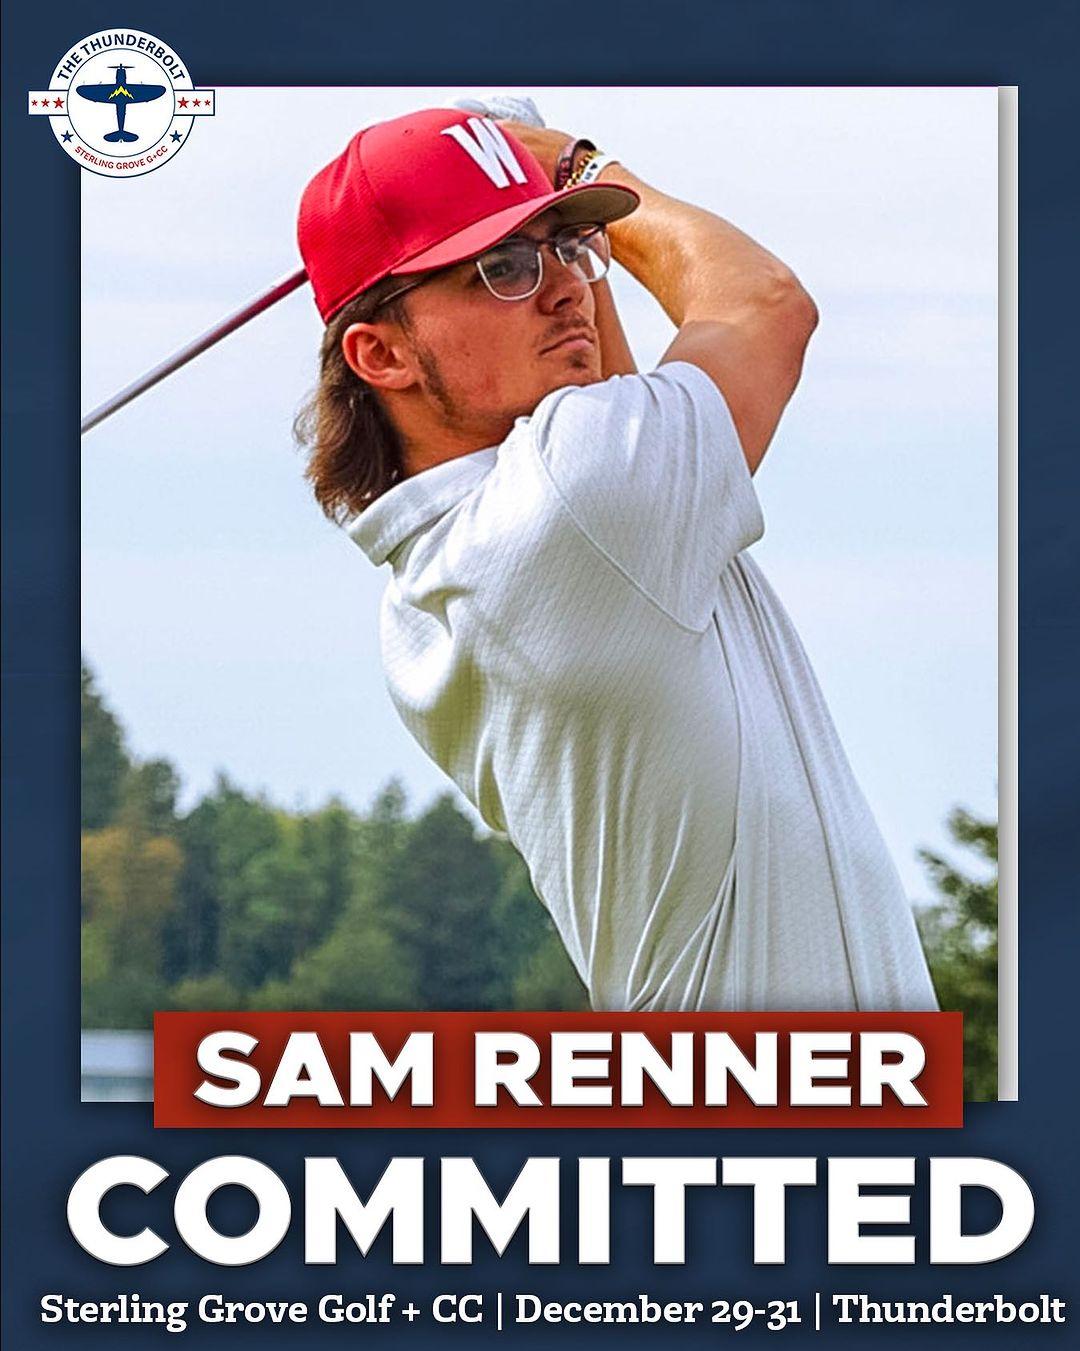 Sam Renner Instagram Post Influencer Campaign